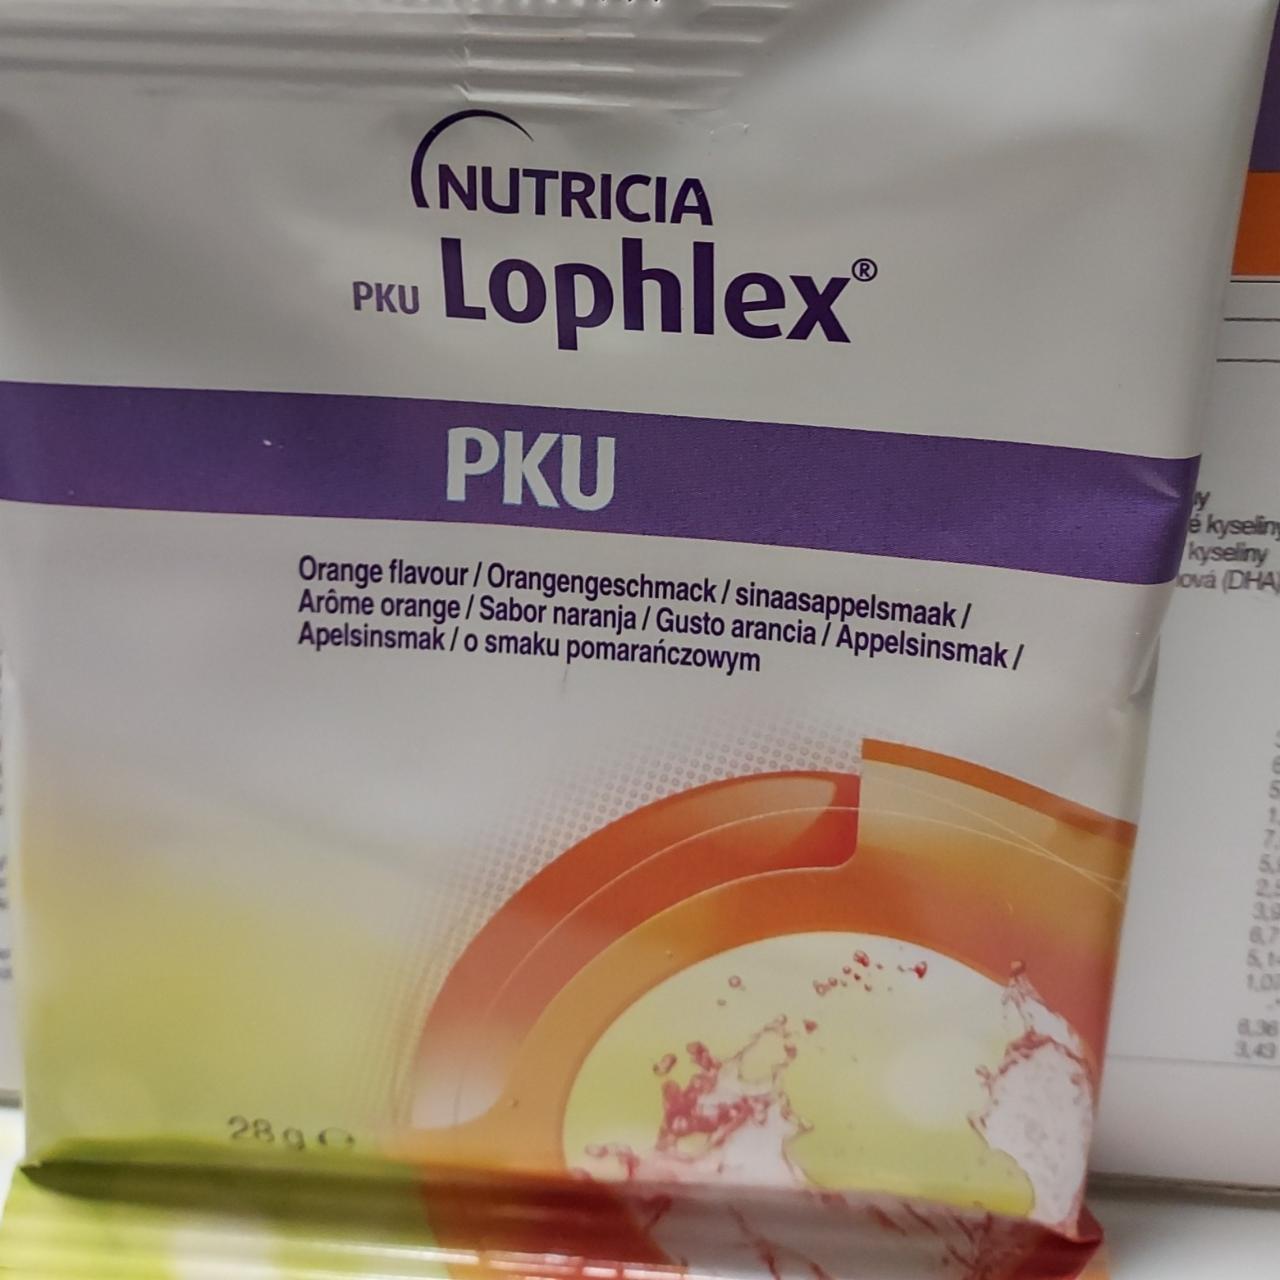 Fotografie - Lophlex PKU Orange flavour Nutricia